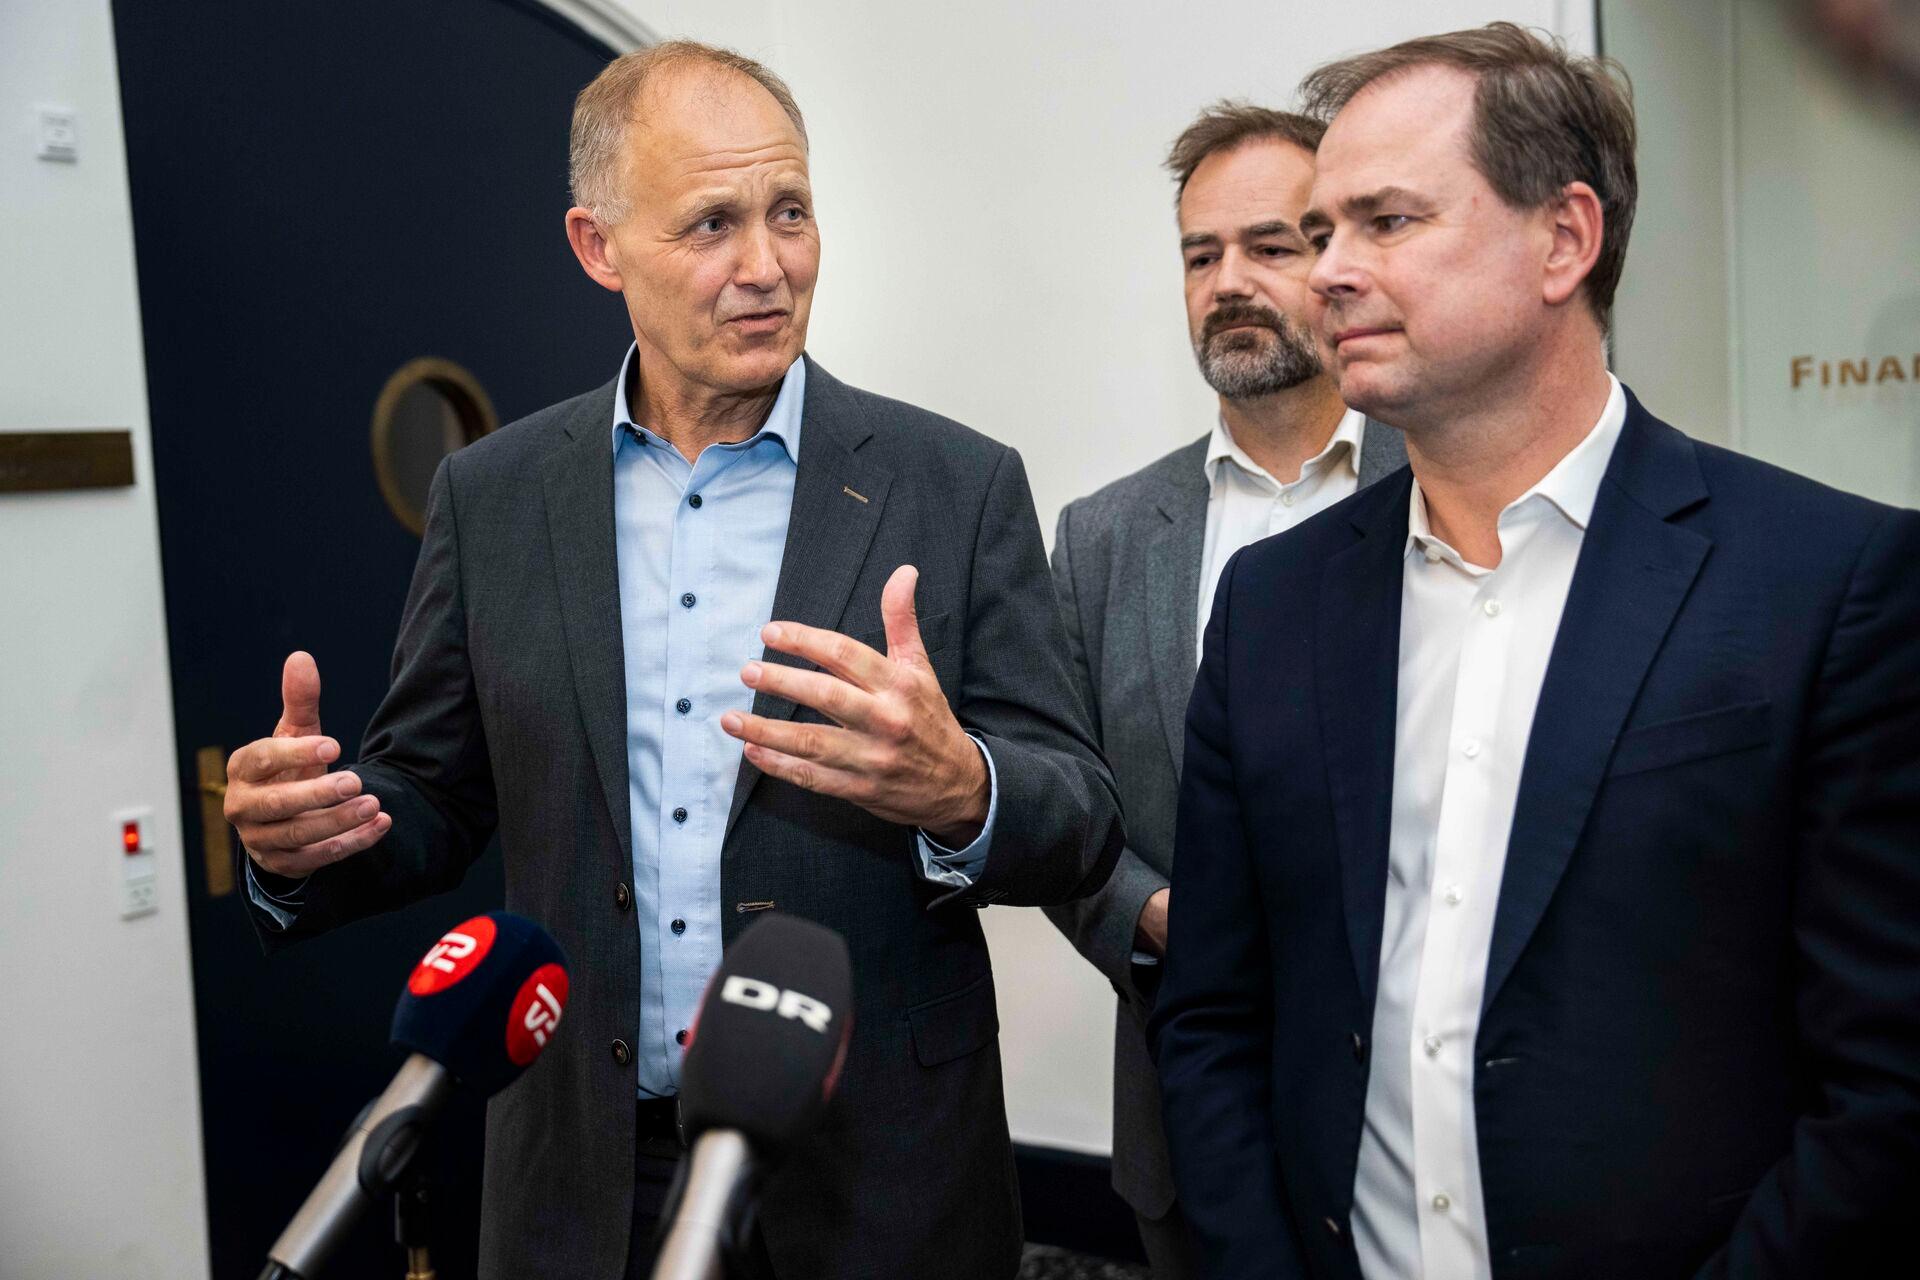 KL-formand Martin Damm (V) og finansminister Nicolai Wammen (S) ved præsentationen af årets økonomiaftale. I baggrunden KL-næstformand Jacob Bundsgaard (S).